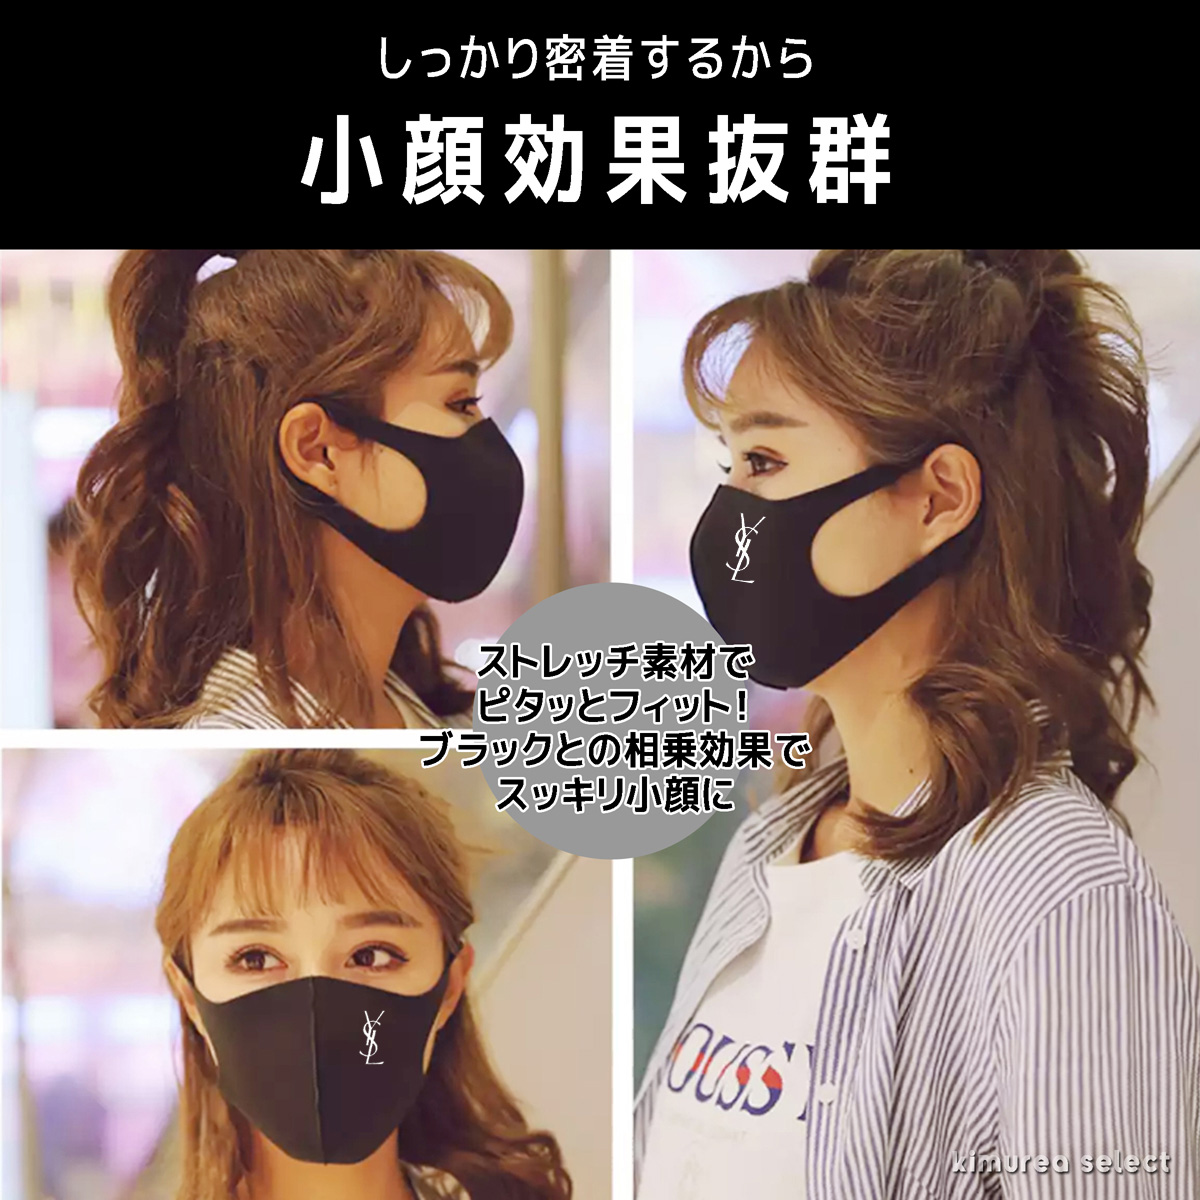 男性 女性 飛沫感染予防 咳 風邪対策 UVカット防塵マスク